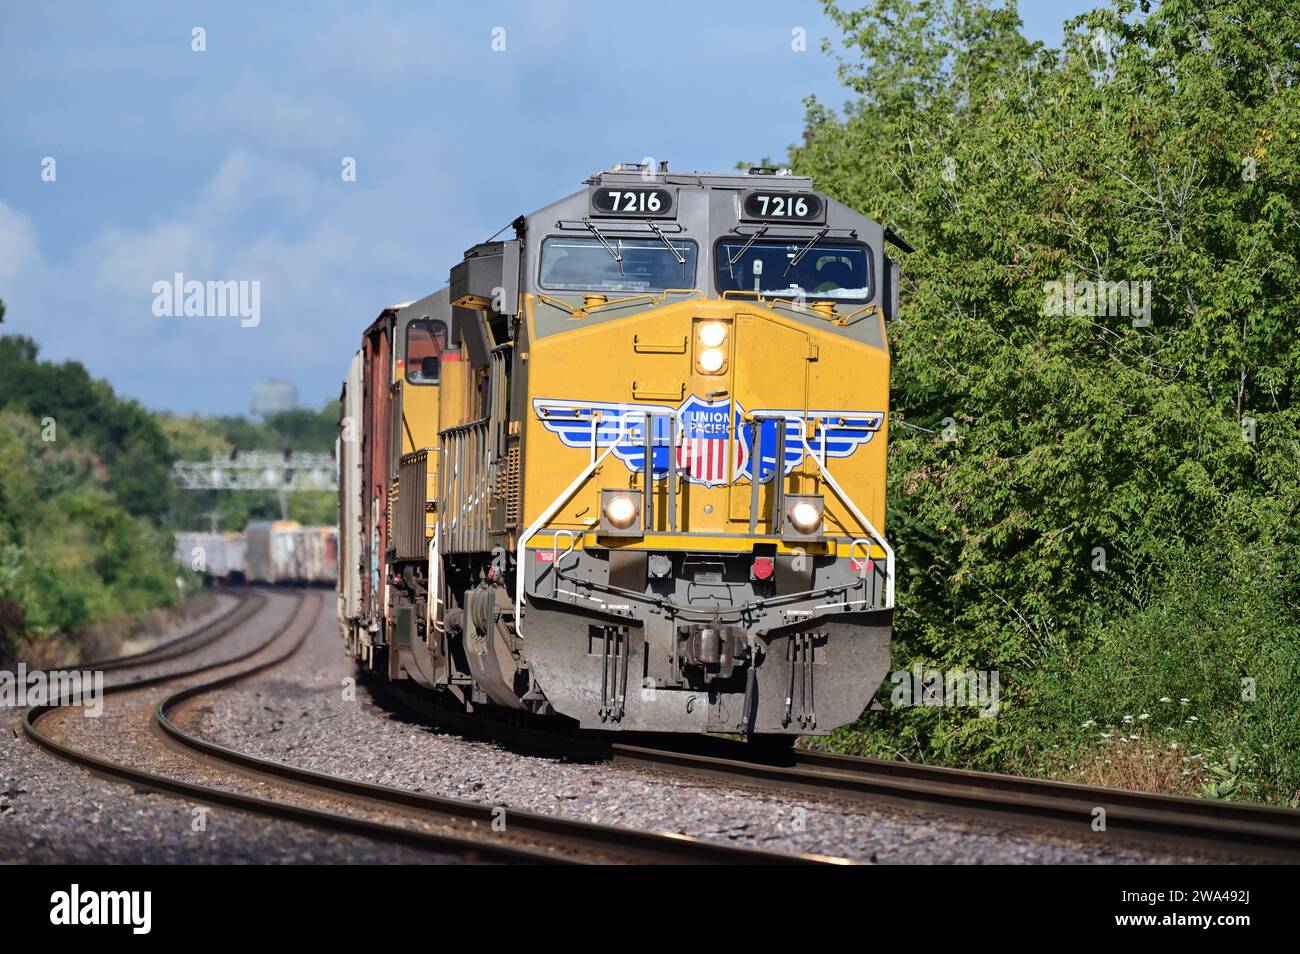 Winfield, Illinois, EE.UU. Con su tren visible atado detrás, dos locomotoras lideran un tren de carga de Union Pacific hasta un ligero grado. Foto de stock